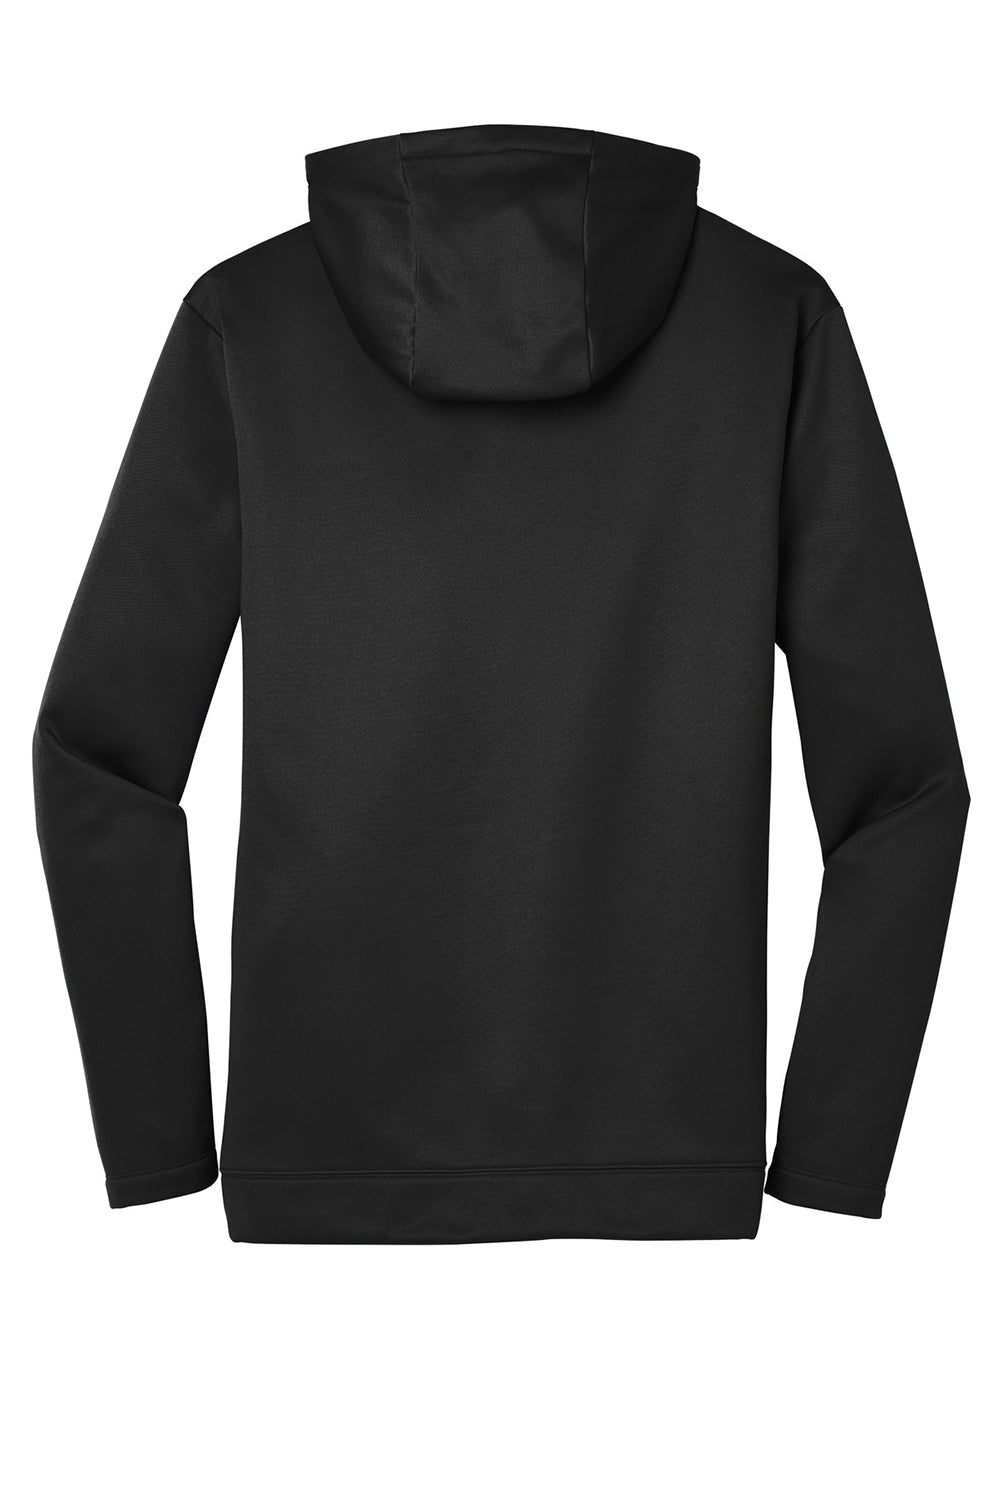 Nike NKAH6259 Mens Therma-Fit Moisture Wicking Fleece Full Zip Hooded Sweatshirt Hoodie Black Flat Back